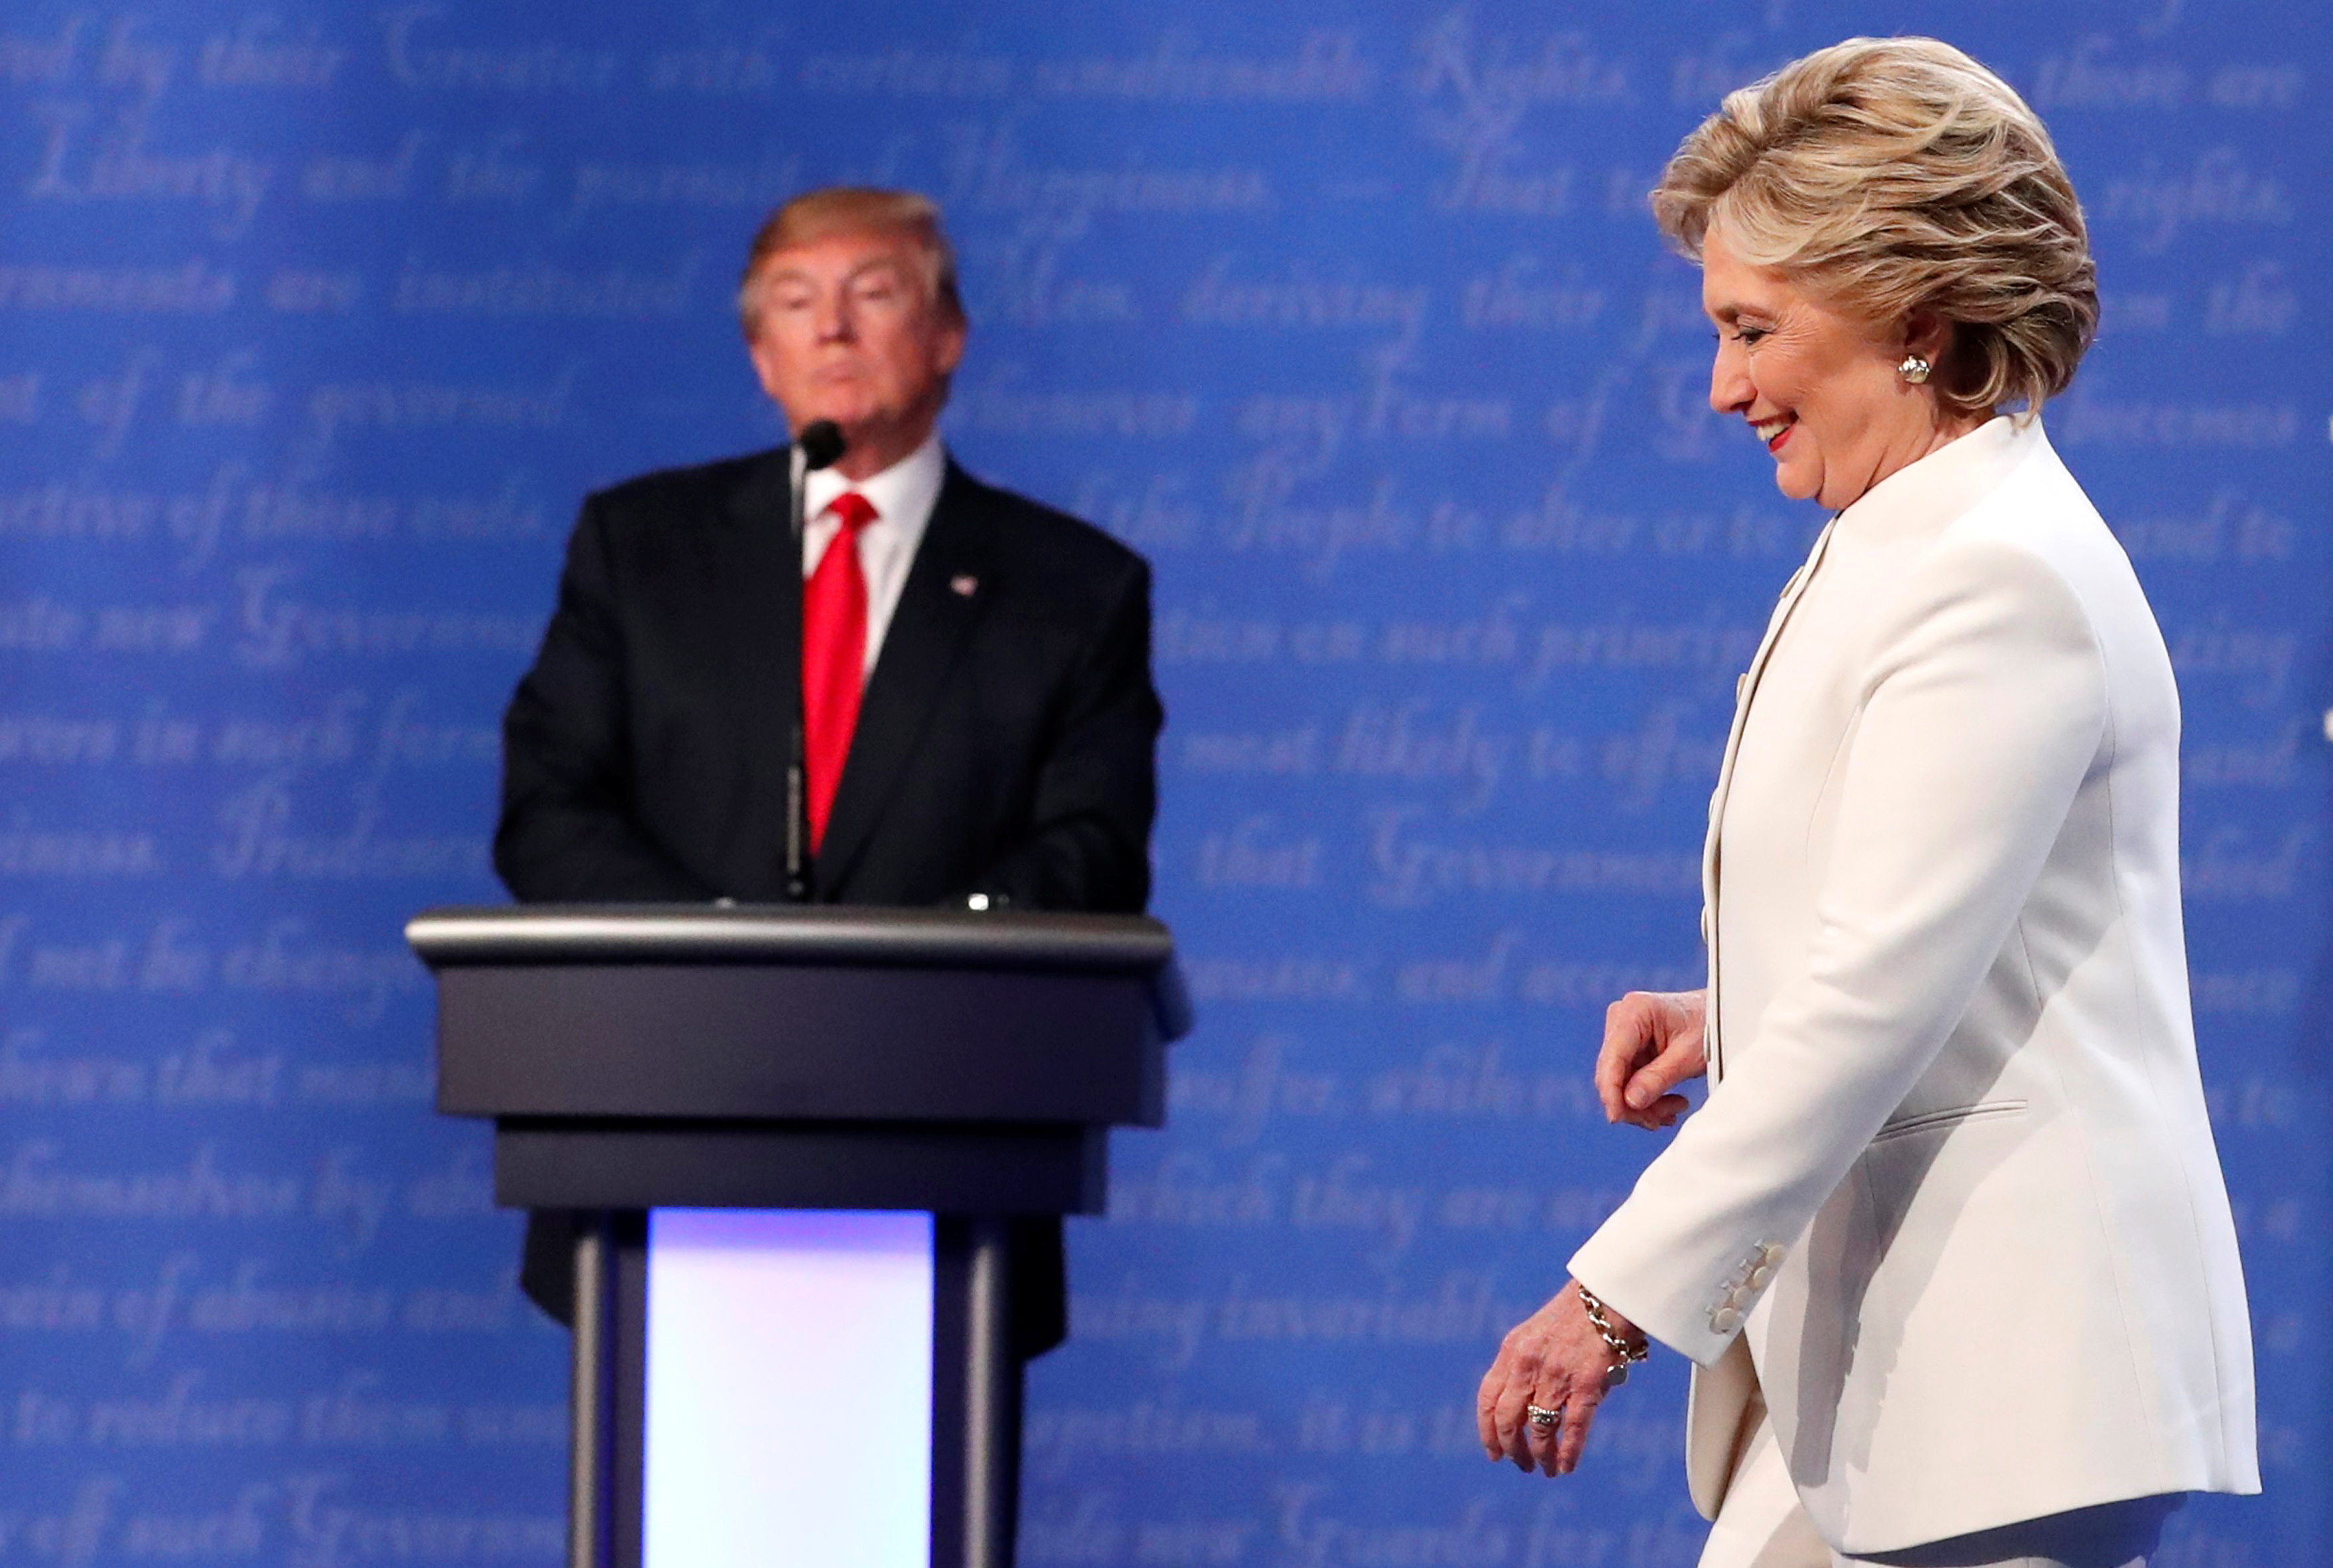 En las elecciones de 2016, los sondeos mostraban una amplia ventaja a favor de la candidata demócrata, Hillary Clinton. Los resultados fueron otros. Foto: REUTERS/Rick Wilking